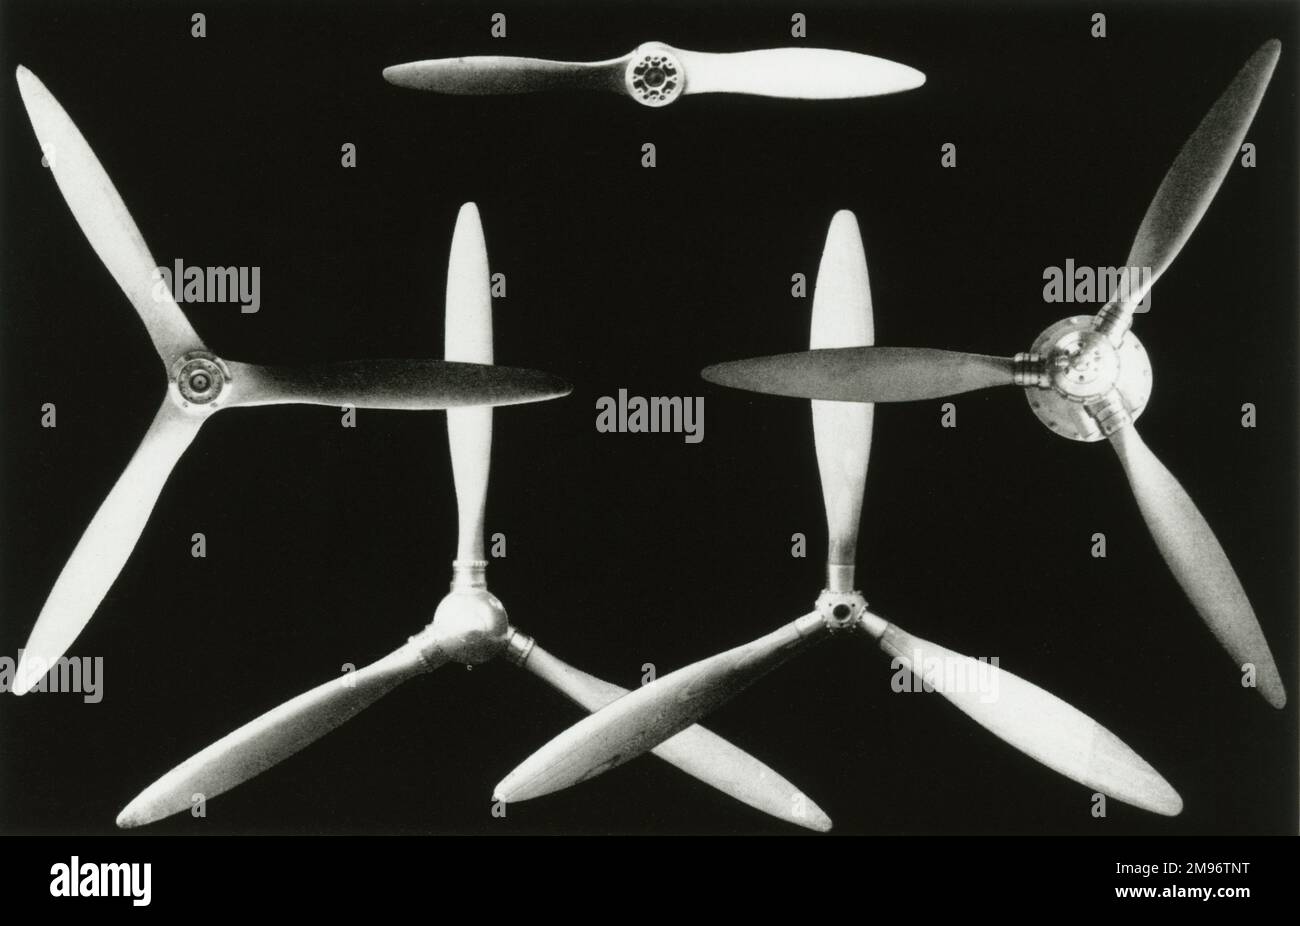 Fairey Aviation Company., metal propellors Stock Photo